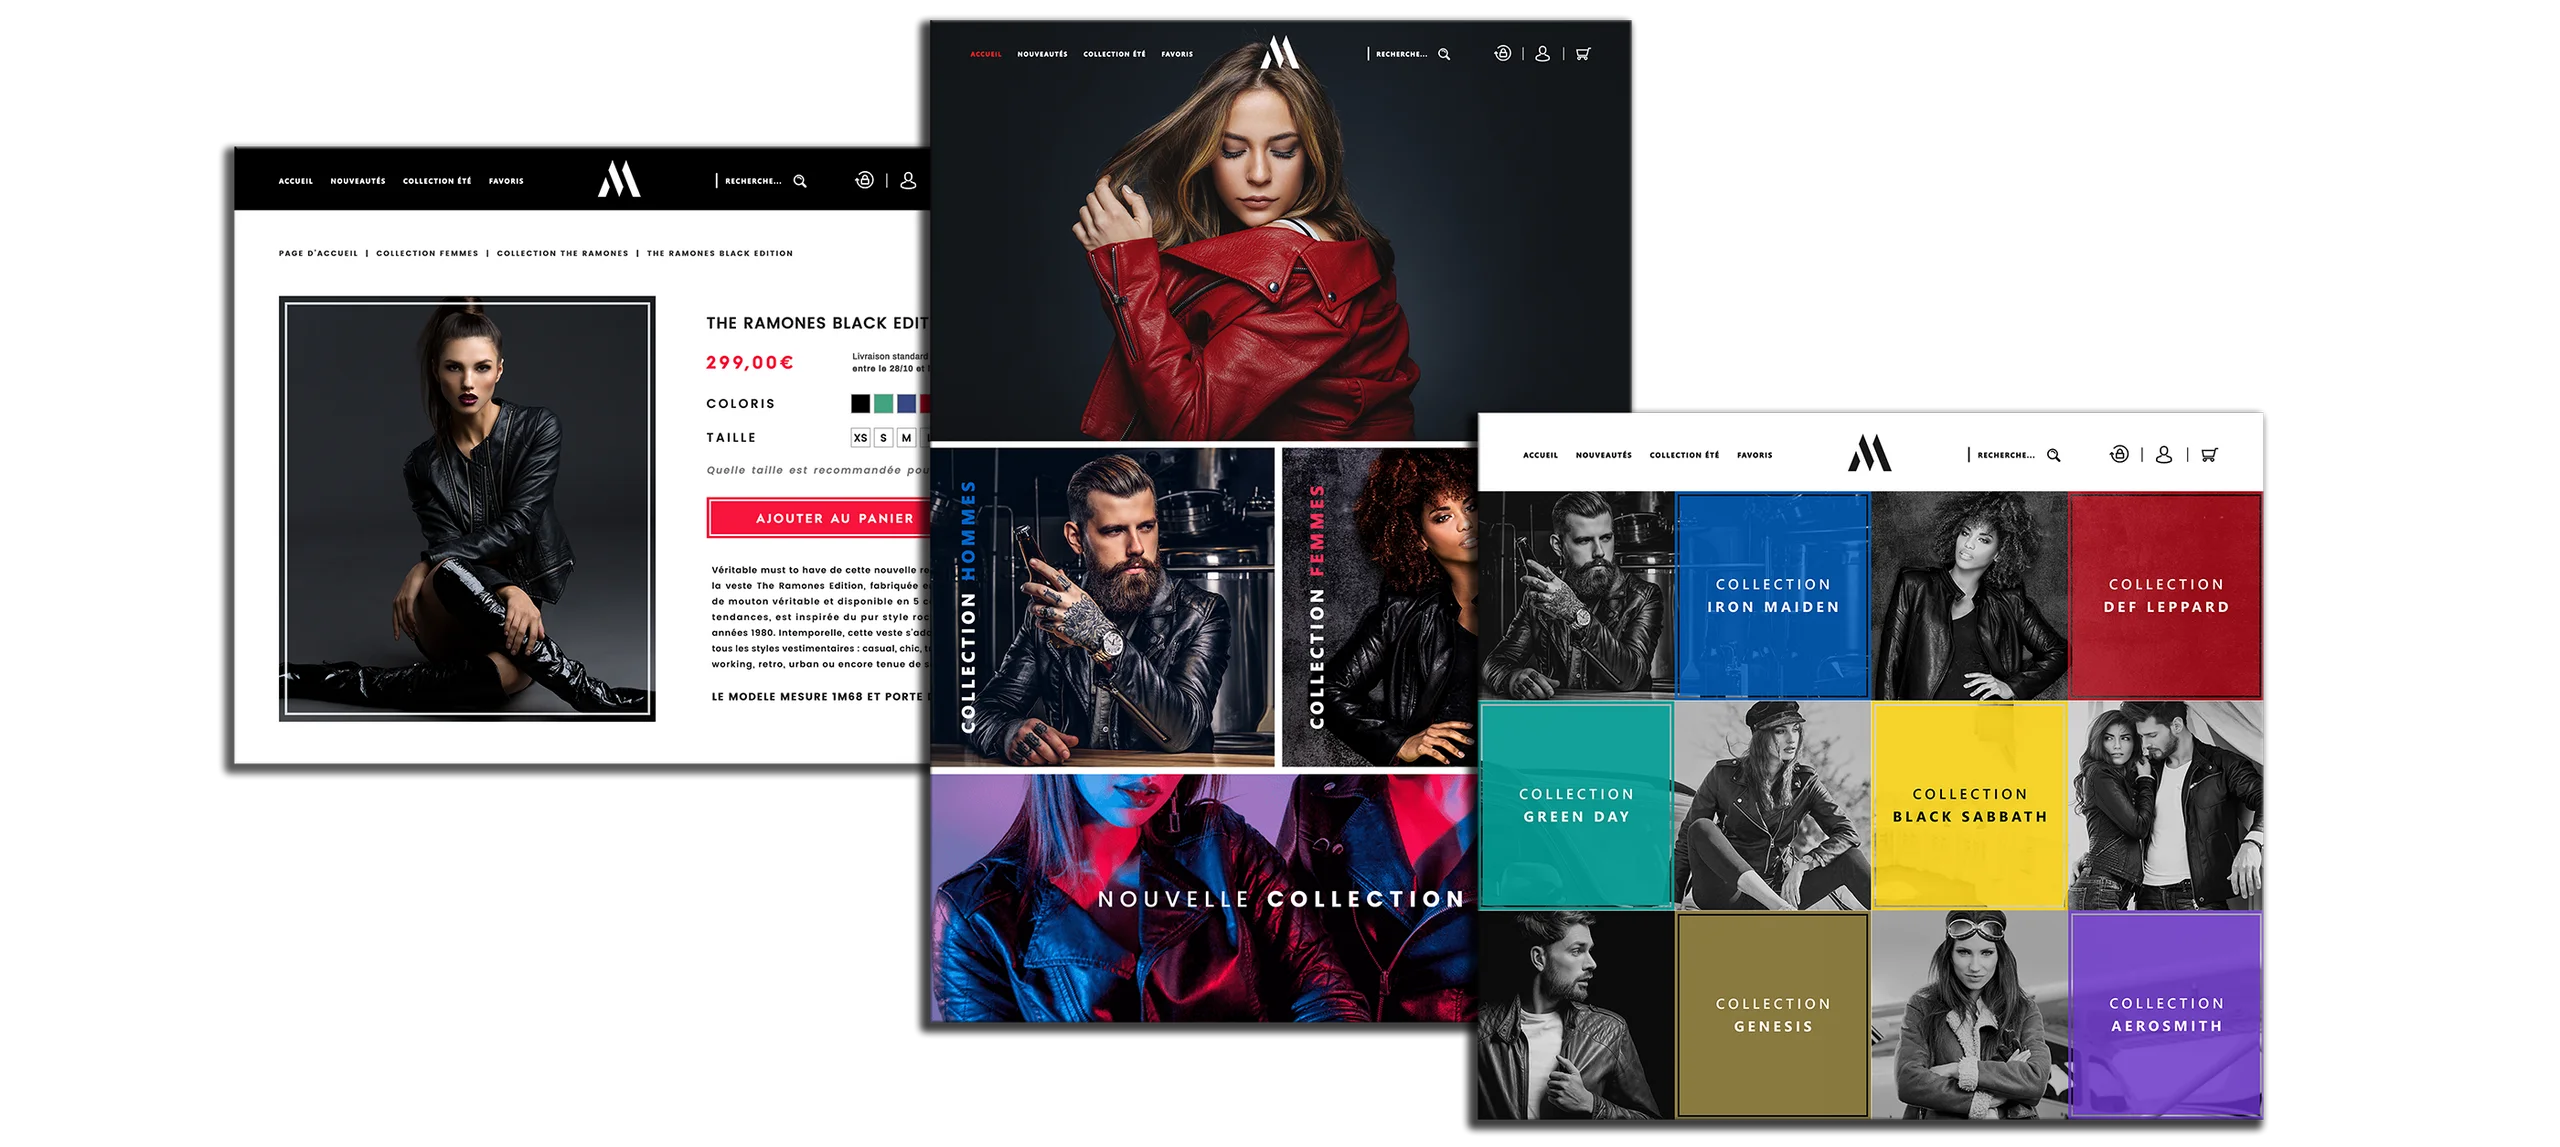 Découvrez le Projet de conception de site e-commerce pour la marque Madison à travers la page d'accueil et les pages internes.